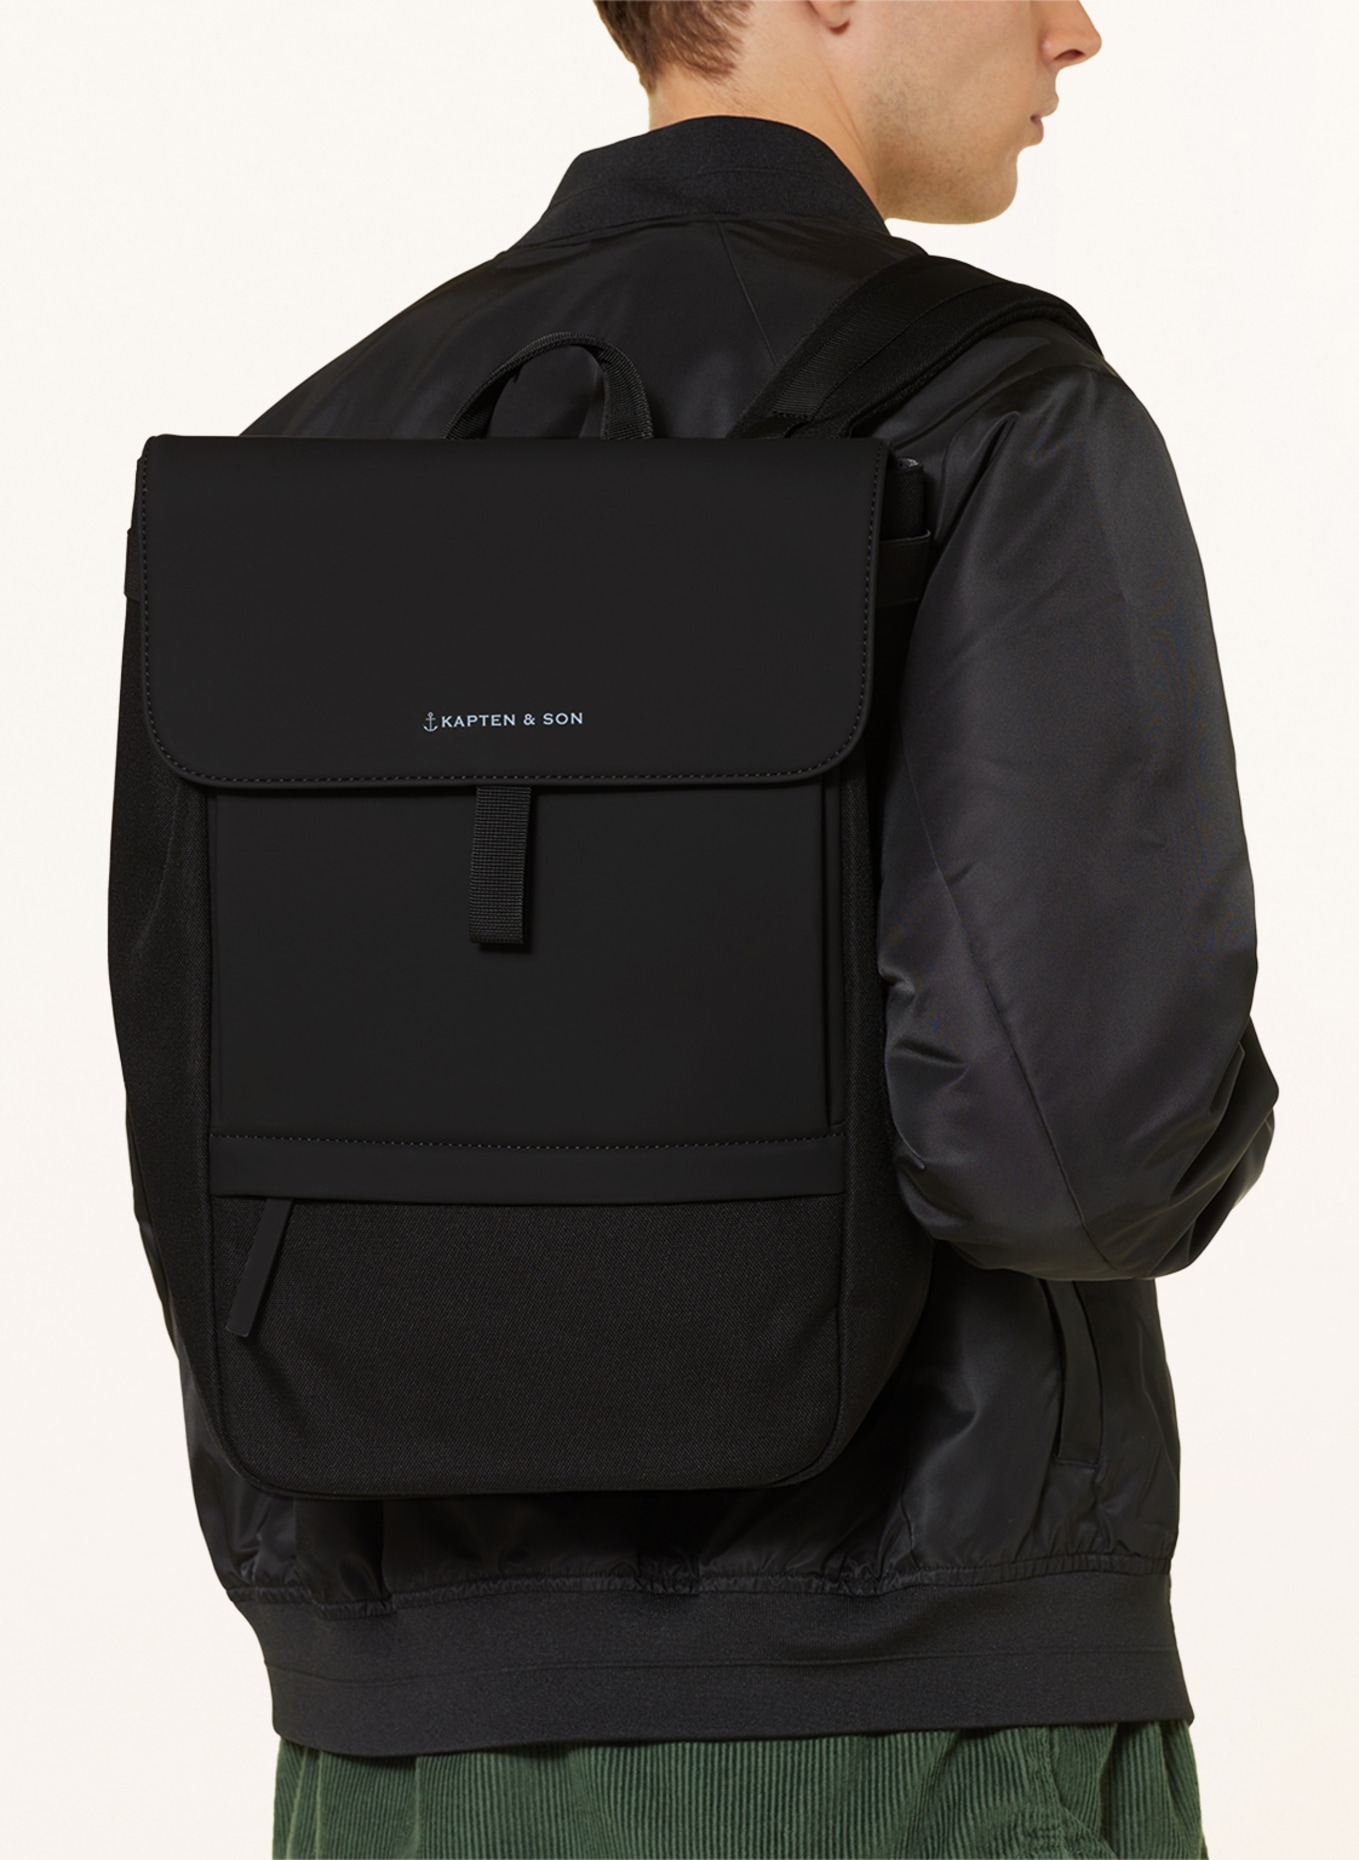 KAPTEN & SON Backpack FYN 14 l with laptop compartment, Color: BLACK (Image 4)